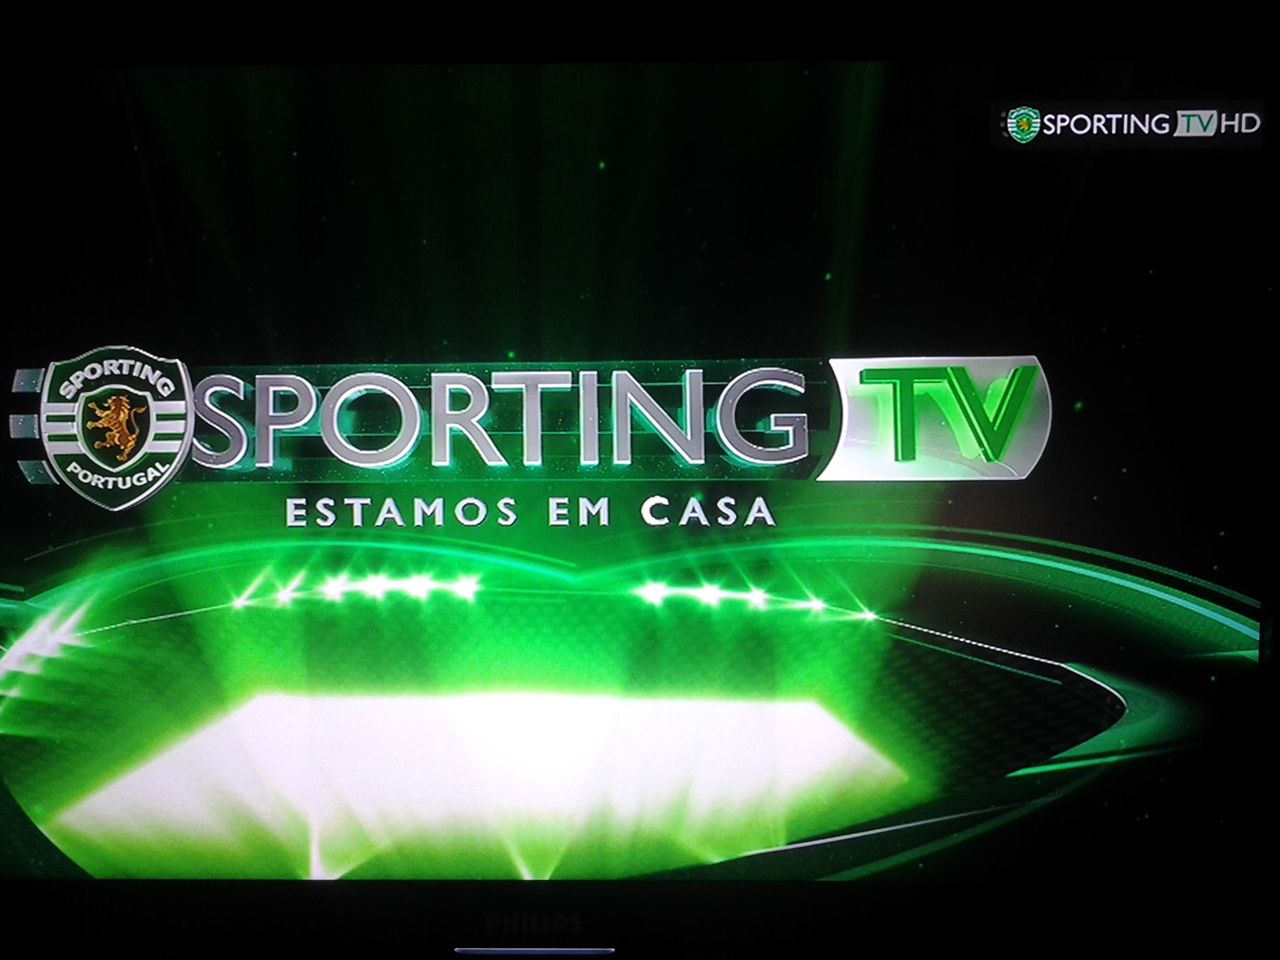 Sporting TV: Jogos em Direto e como ver Sporting TV Online